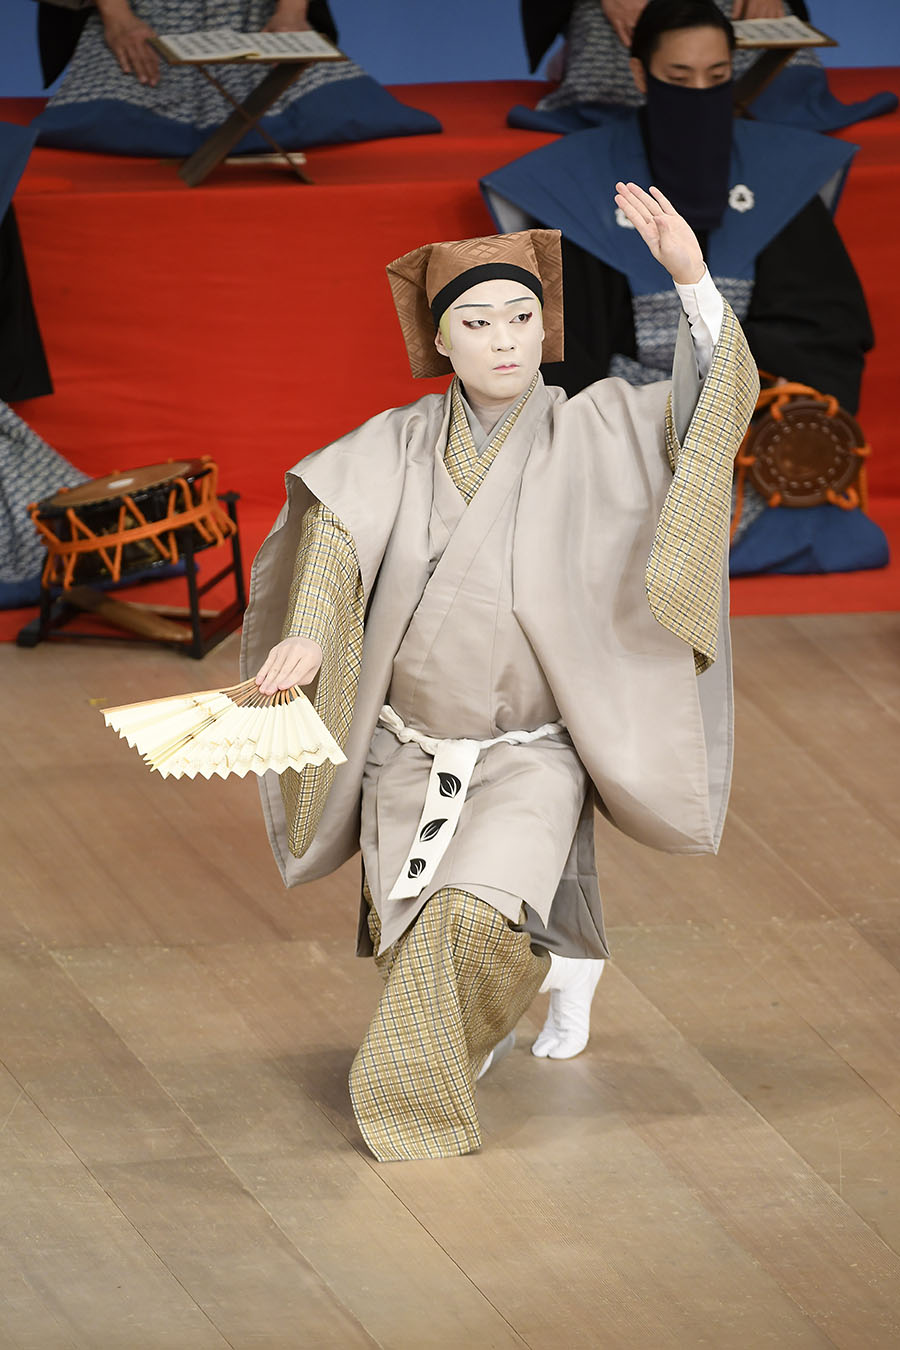 福之助さんの2021年は歌舞伎座「壽初春大歌舞伎」で幕開け。猿之助さん主演の愉快な舞踊『悪太郎』に修行者智蓮坊で出演し、日本舞踊には珍しい三拍子のリズムを取り入れたこの作品でも貴重な経験をした。©松竹